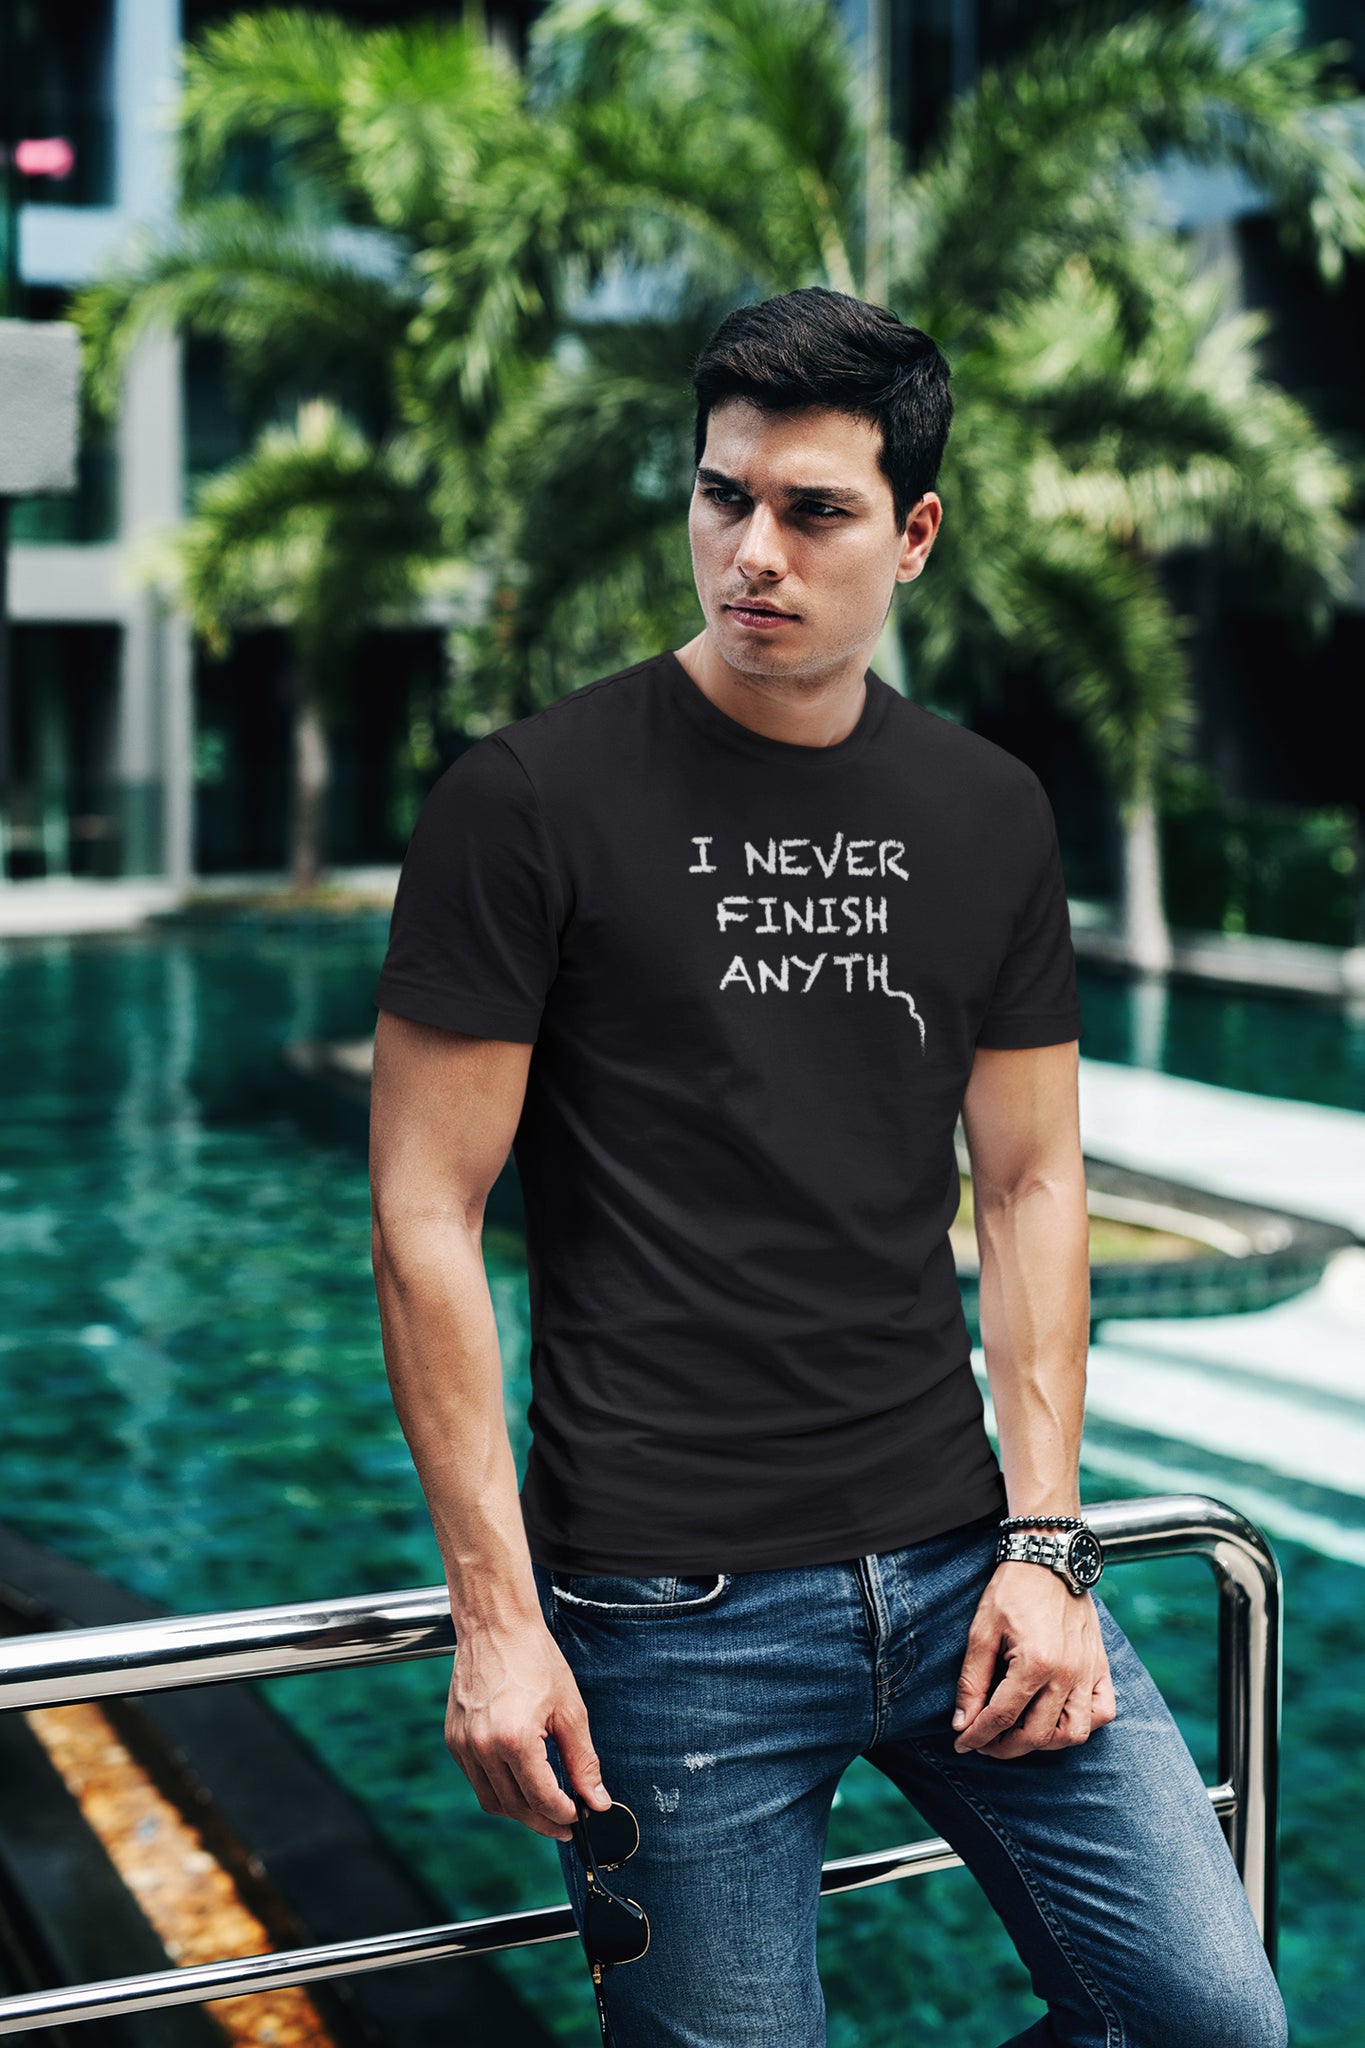 I Never Finish Anyth Unisex T-shirt